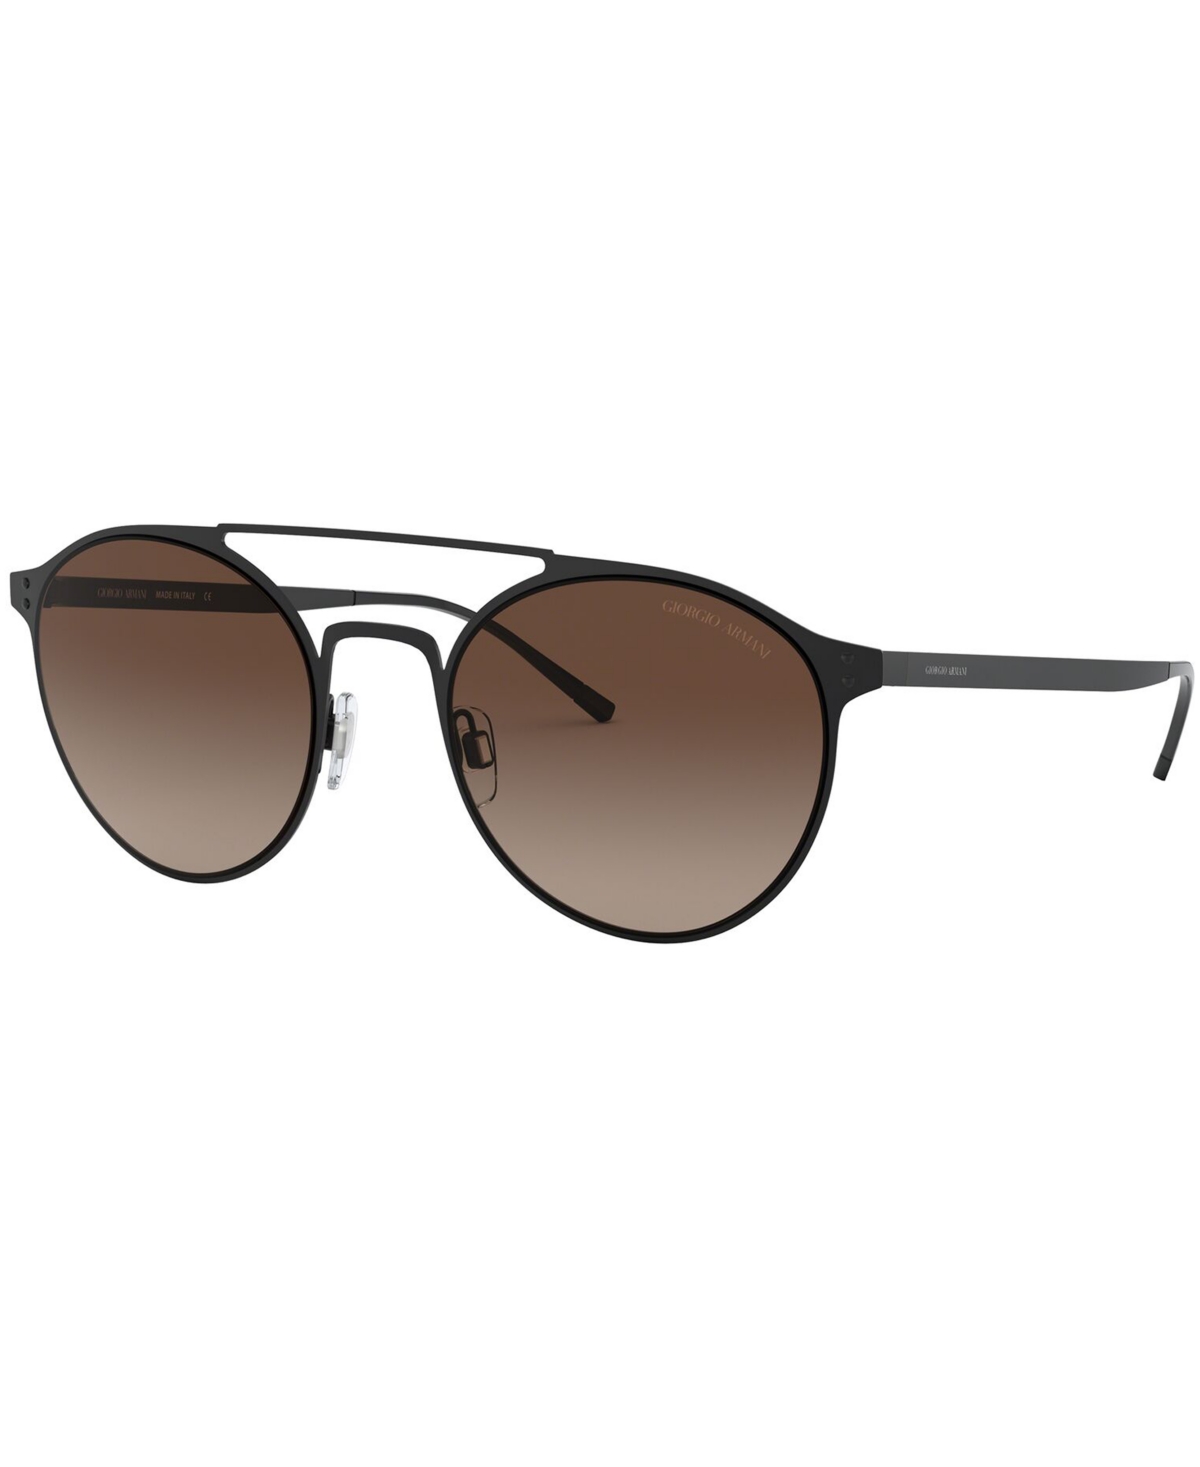 Giorgio Armani Sunglasses, Ar6089 54 In Matte Black,brown Gradient